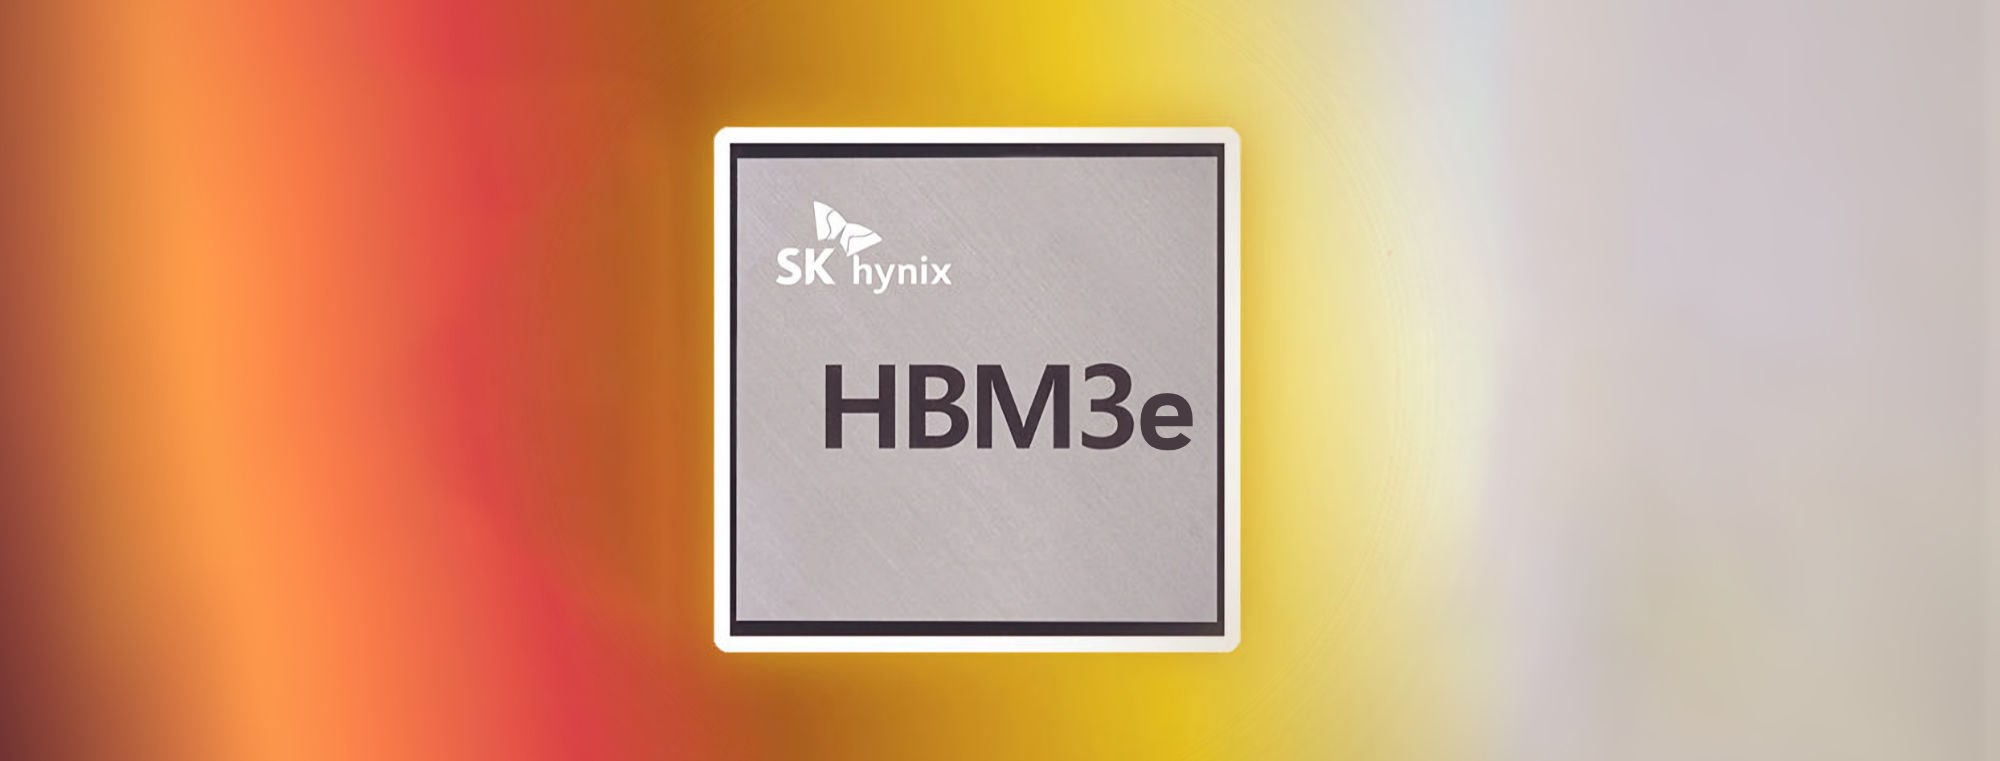 SK hynix, 5.nesil HBM3E bellek üretimine başlıyor!